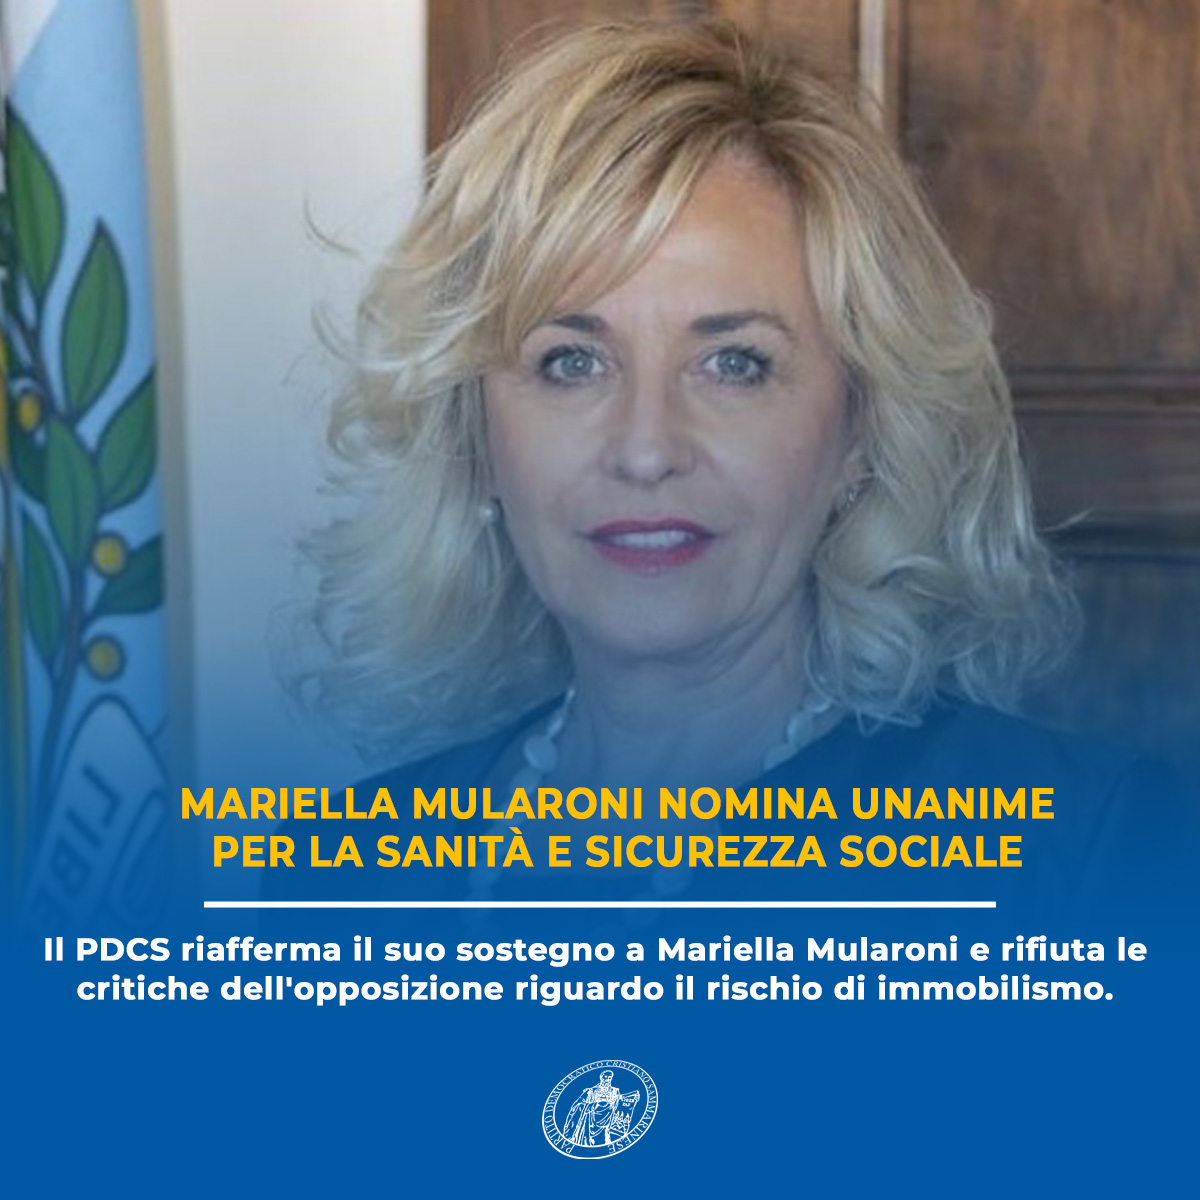 Mariella Mularoni Nomina Unanime per la Sanità e Sicurezza Sociale: Il PDCS Celebra la Continuità e Responsabilità